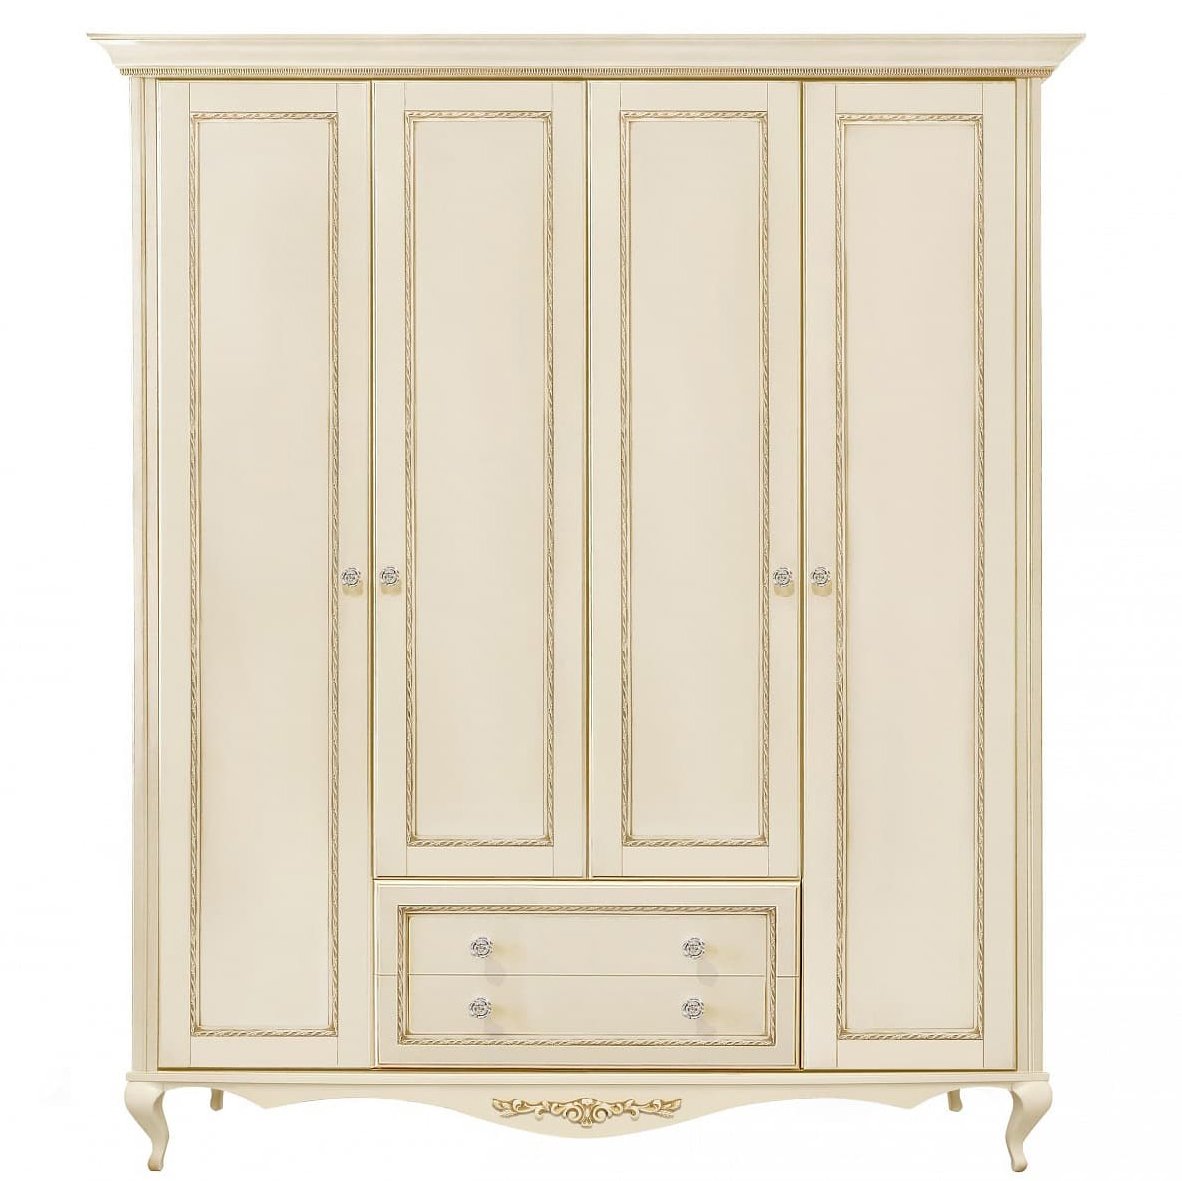 Шкаф платяной Timber Неаполь, 4-х дверный 204x65x227 см, цвет: ваниль с золотом (Т-524Д/VO)Т-524Д